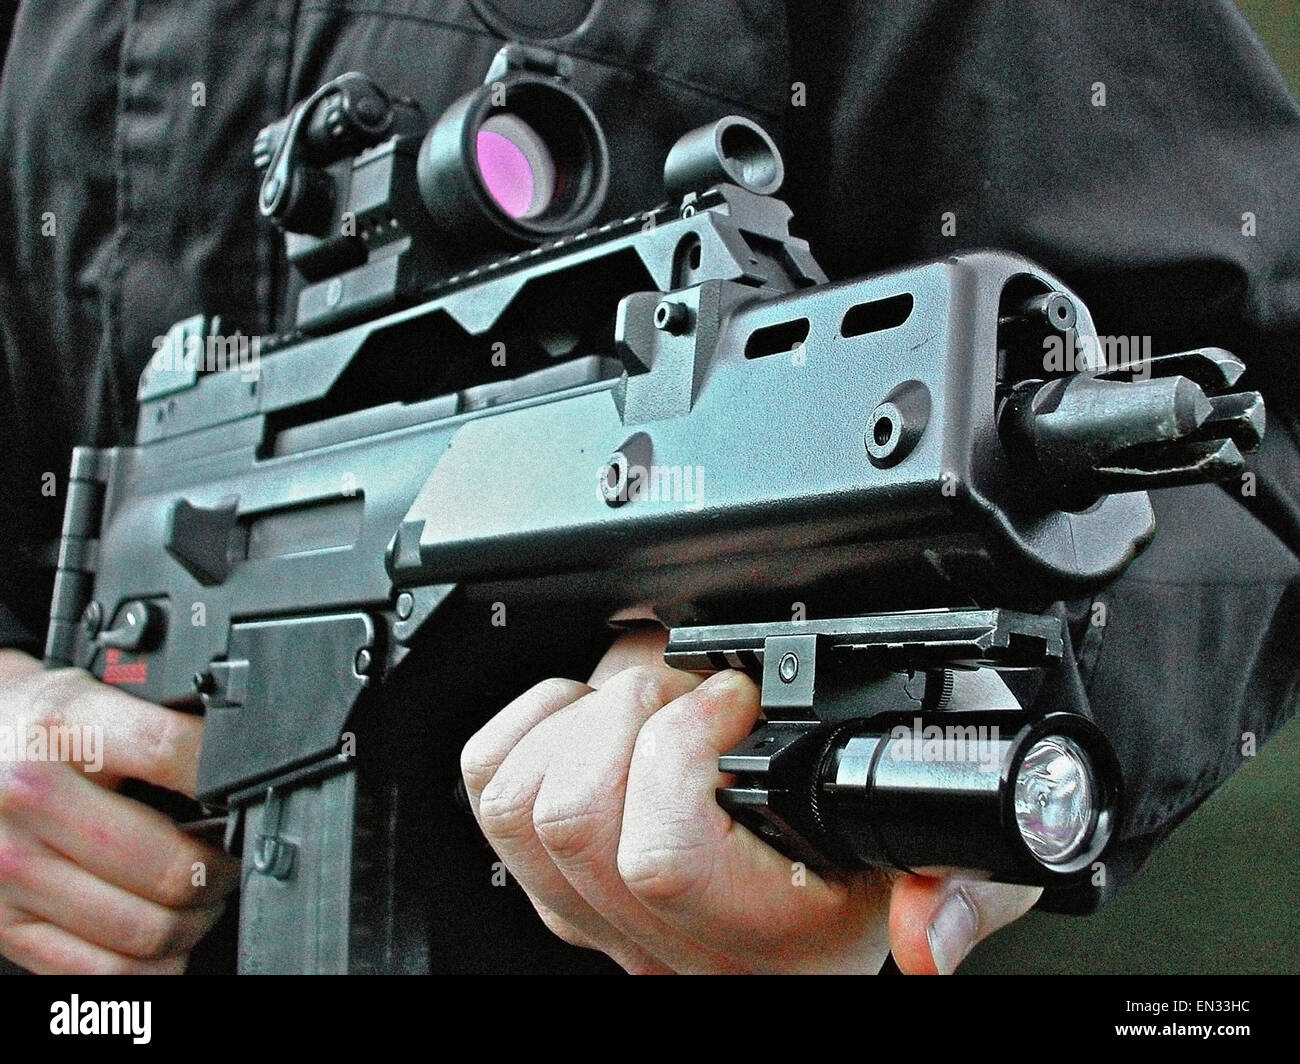 Una Heckler & Koch G36 C (5,56mm x 45 OTAN calibre Rifle de asalto de gas), favorecido por la ley británica (policía). Tiene las dimensiones de una ametralladora, combinada con la capacidad de penetración del calibre 5,56 OTAN. Foto de stock